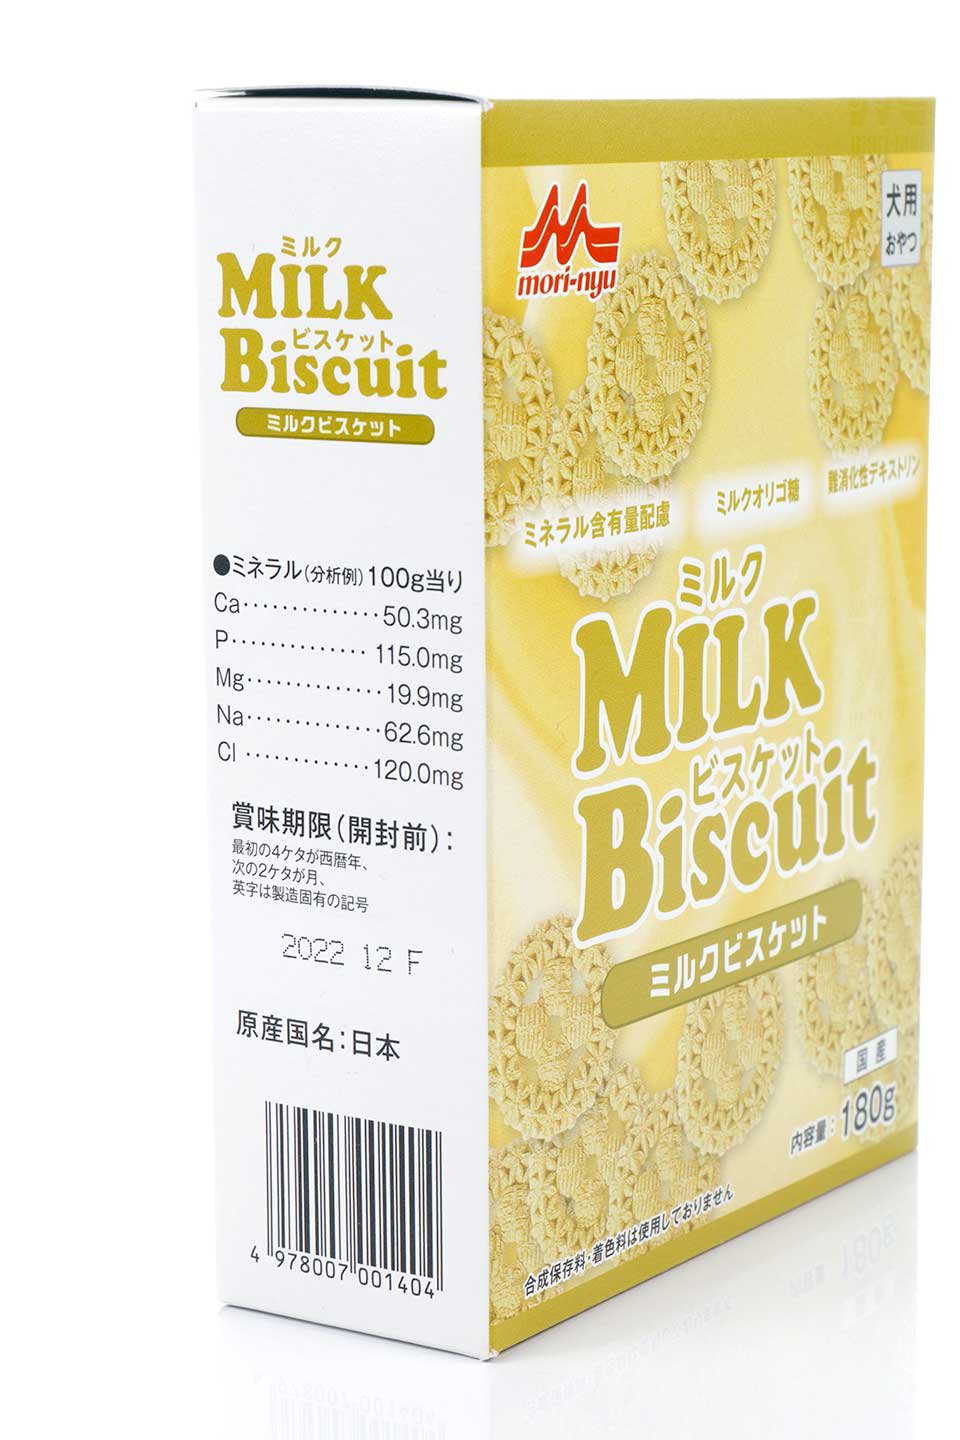 MilkBiscuitミルクビスケットのドッググッズやオヤツ。ワンちゃんも大喜びの本格派、森乳のミルクビスケット。森永乳業のペットフード部門の人気オヤツです。/main-2